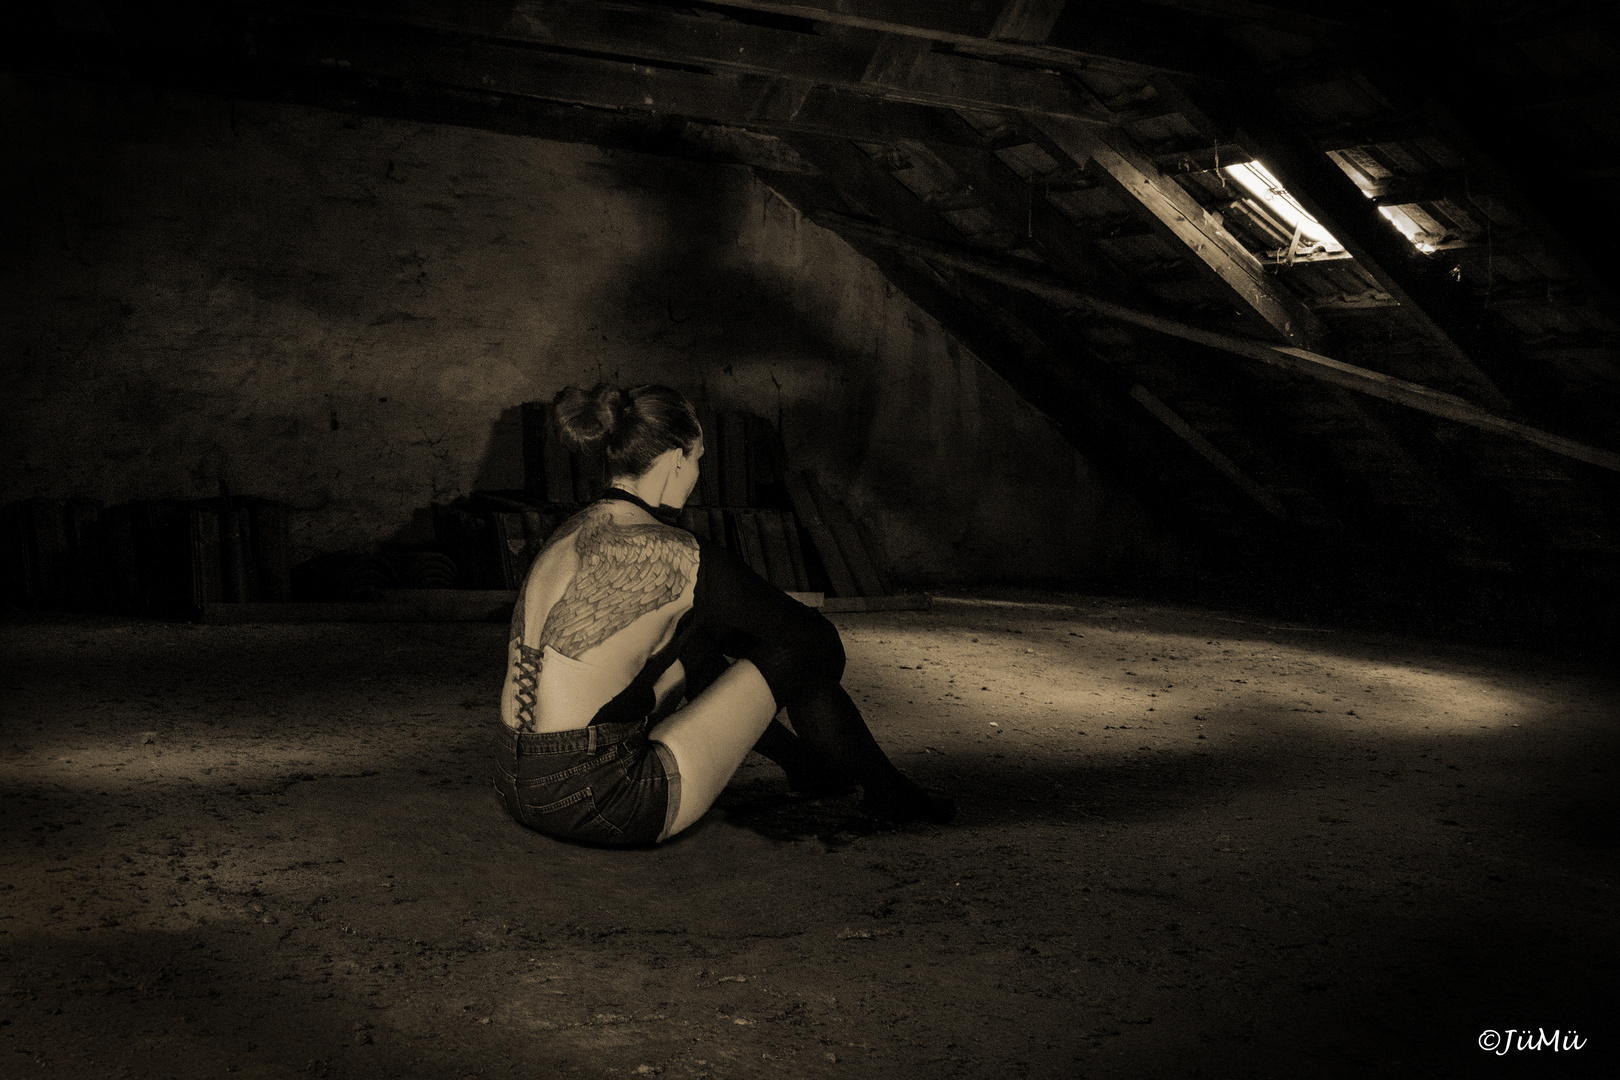 in the attic